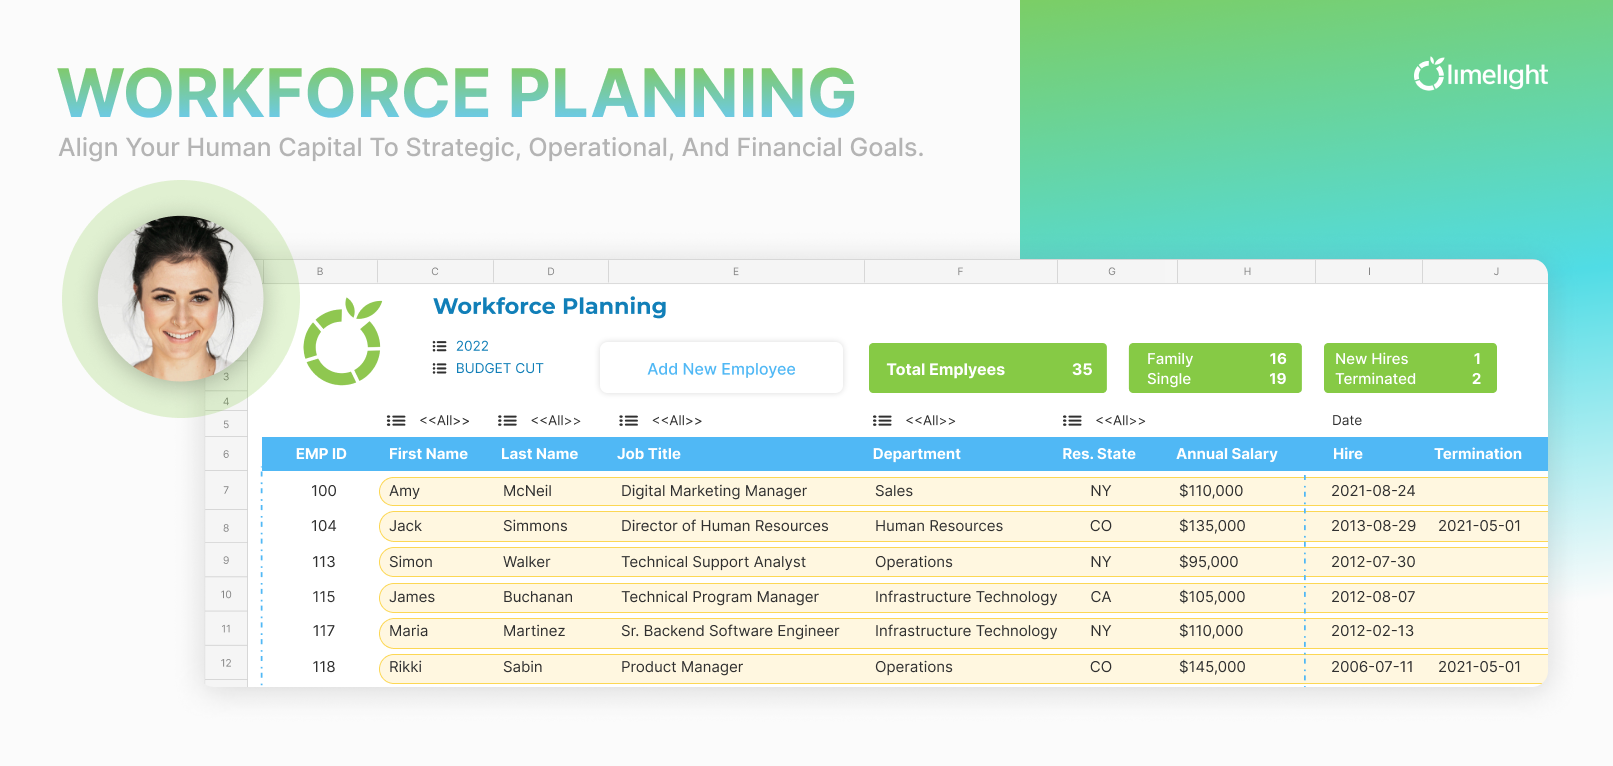 Workforce Planning